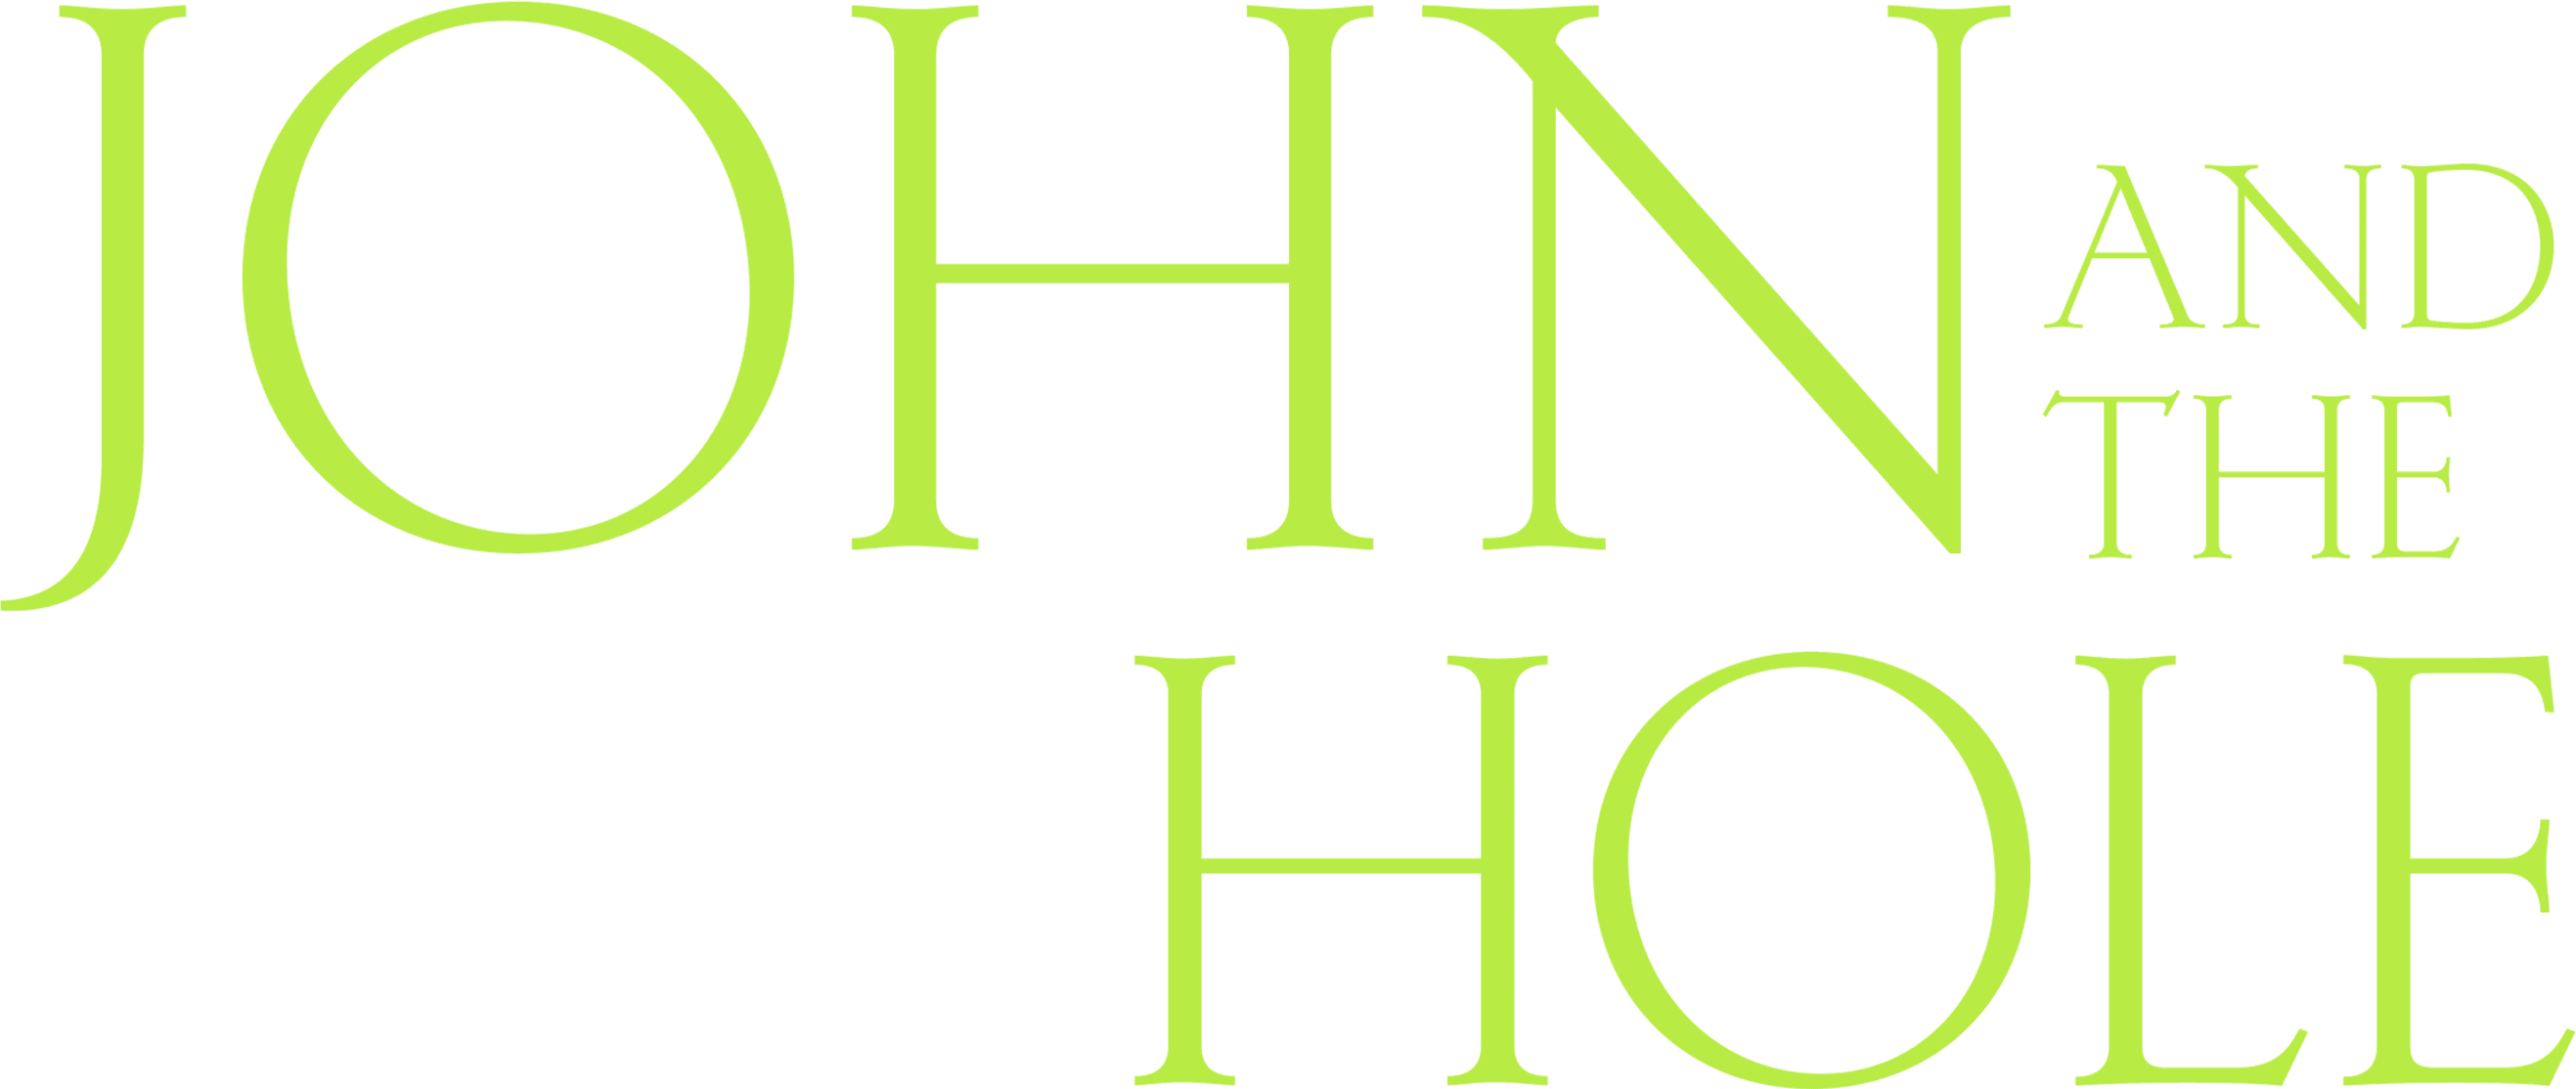 John and the Hole logo